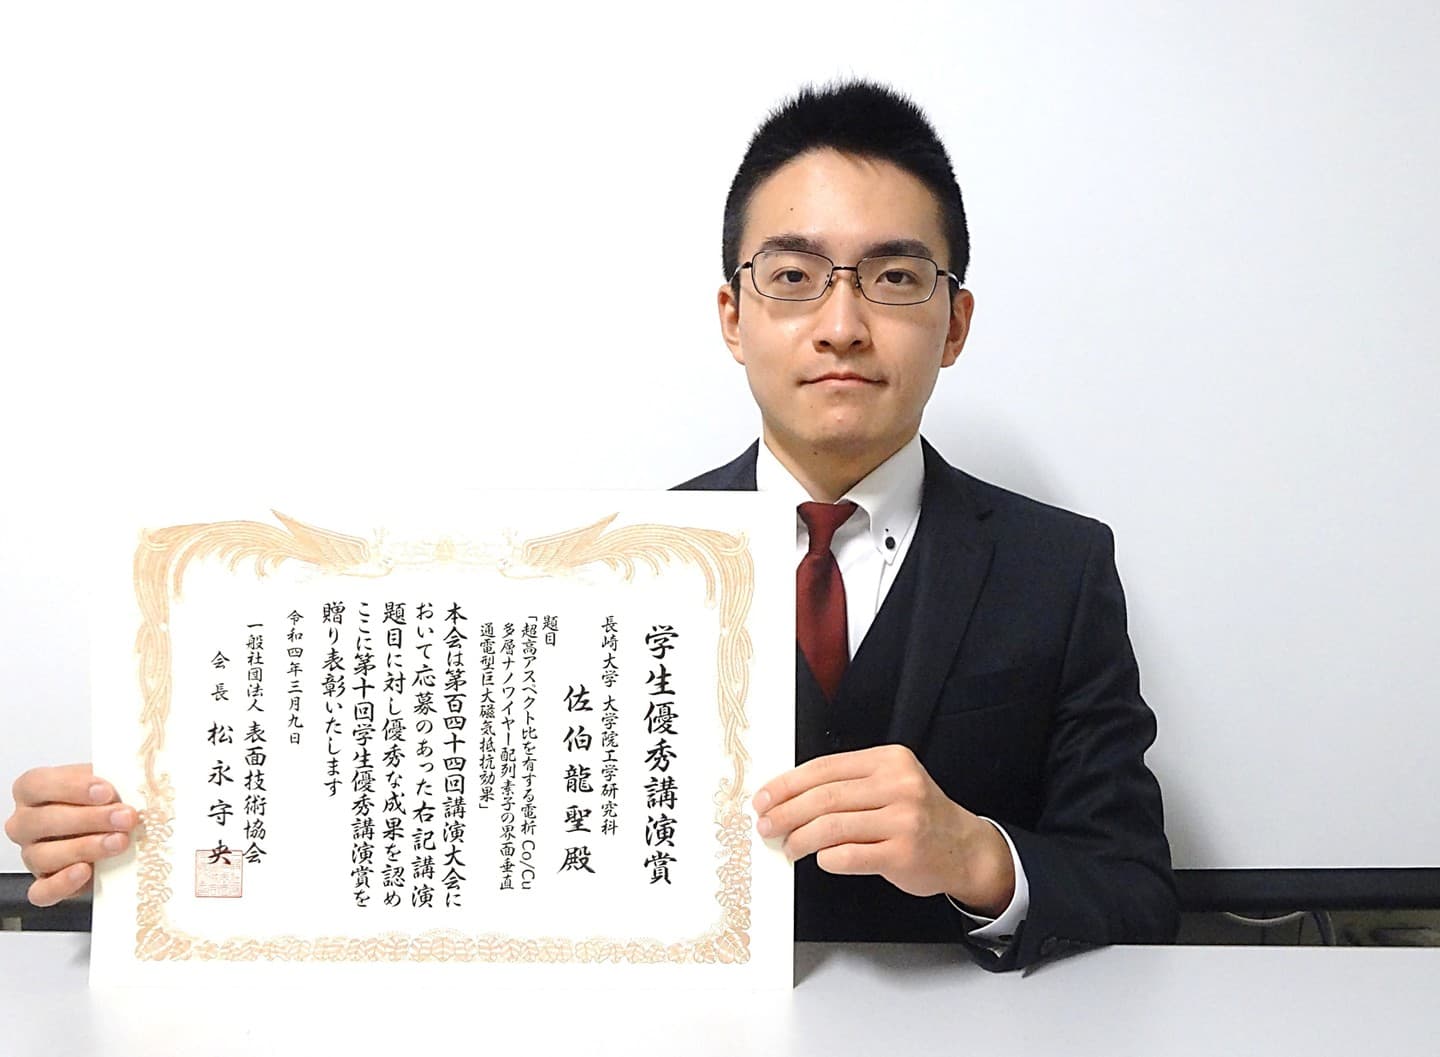 佐伯龍聖君(日本学術振興会DC1)が、応用物理学会九州支部学術講演会において、発表奨励賞を受賞しました。2021/12/5